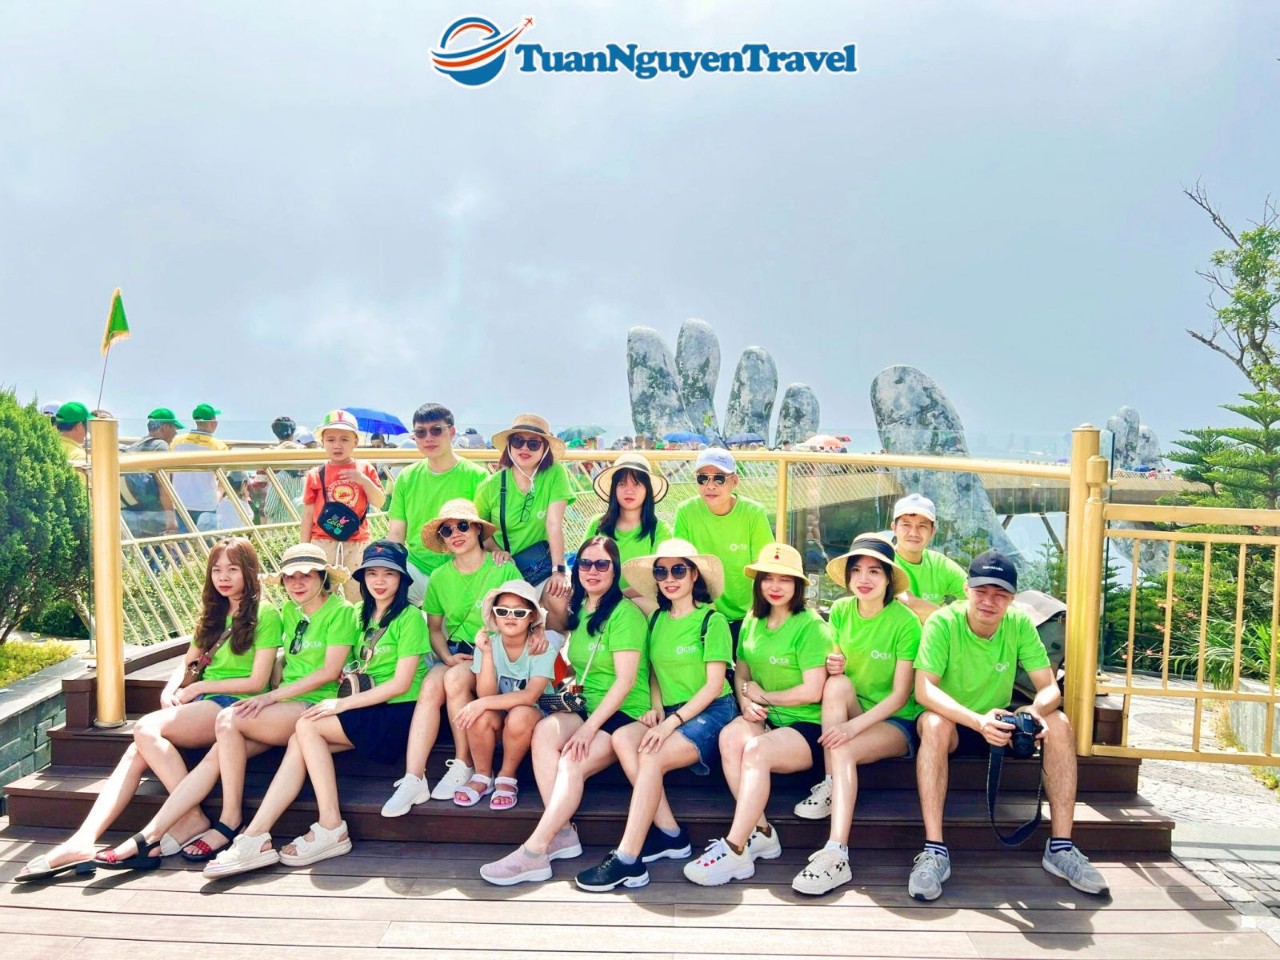 Thật sự rất thích đi tour của Tuấn Nguyễn Travel. Chúc công ty ngày càng phát triển